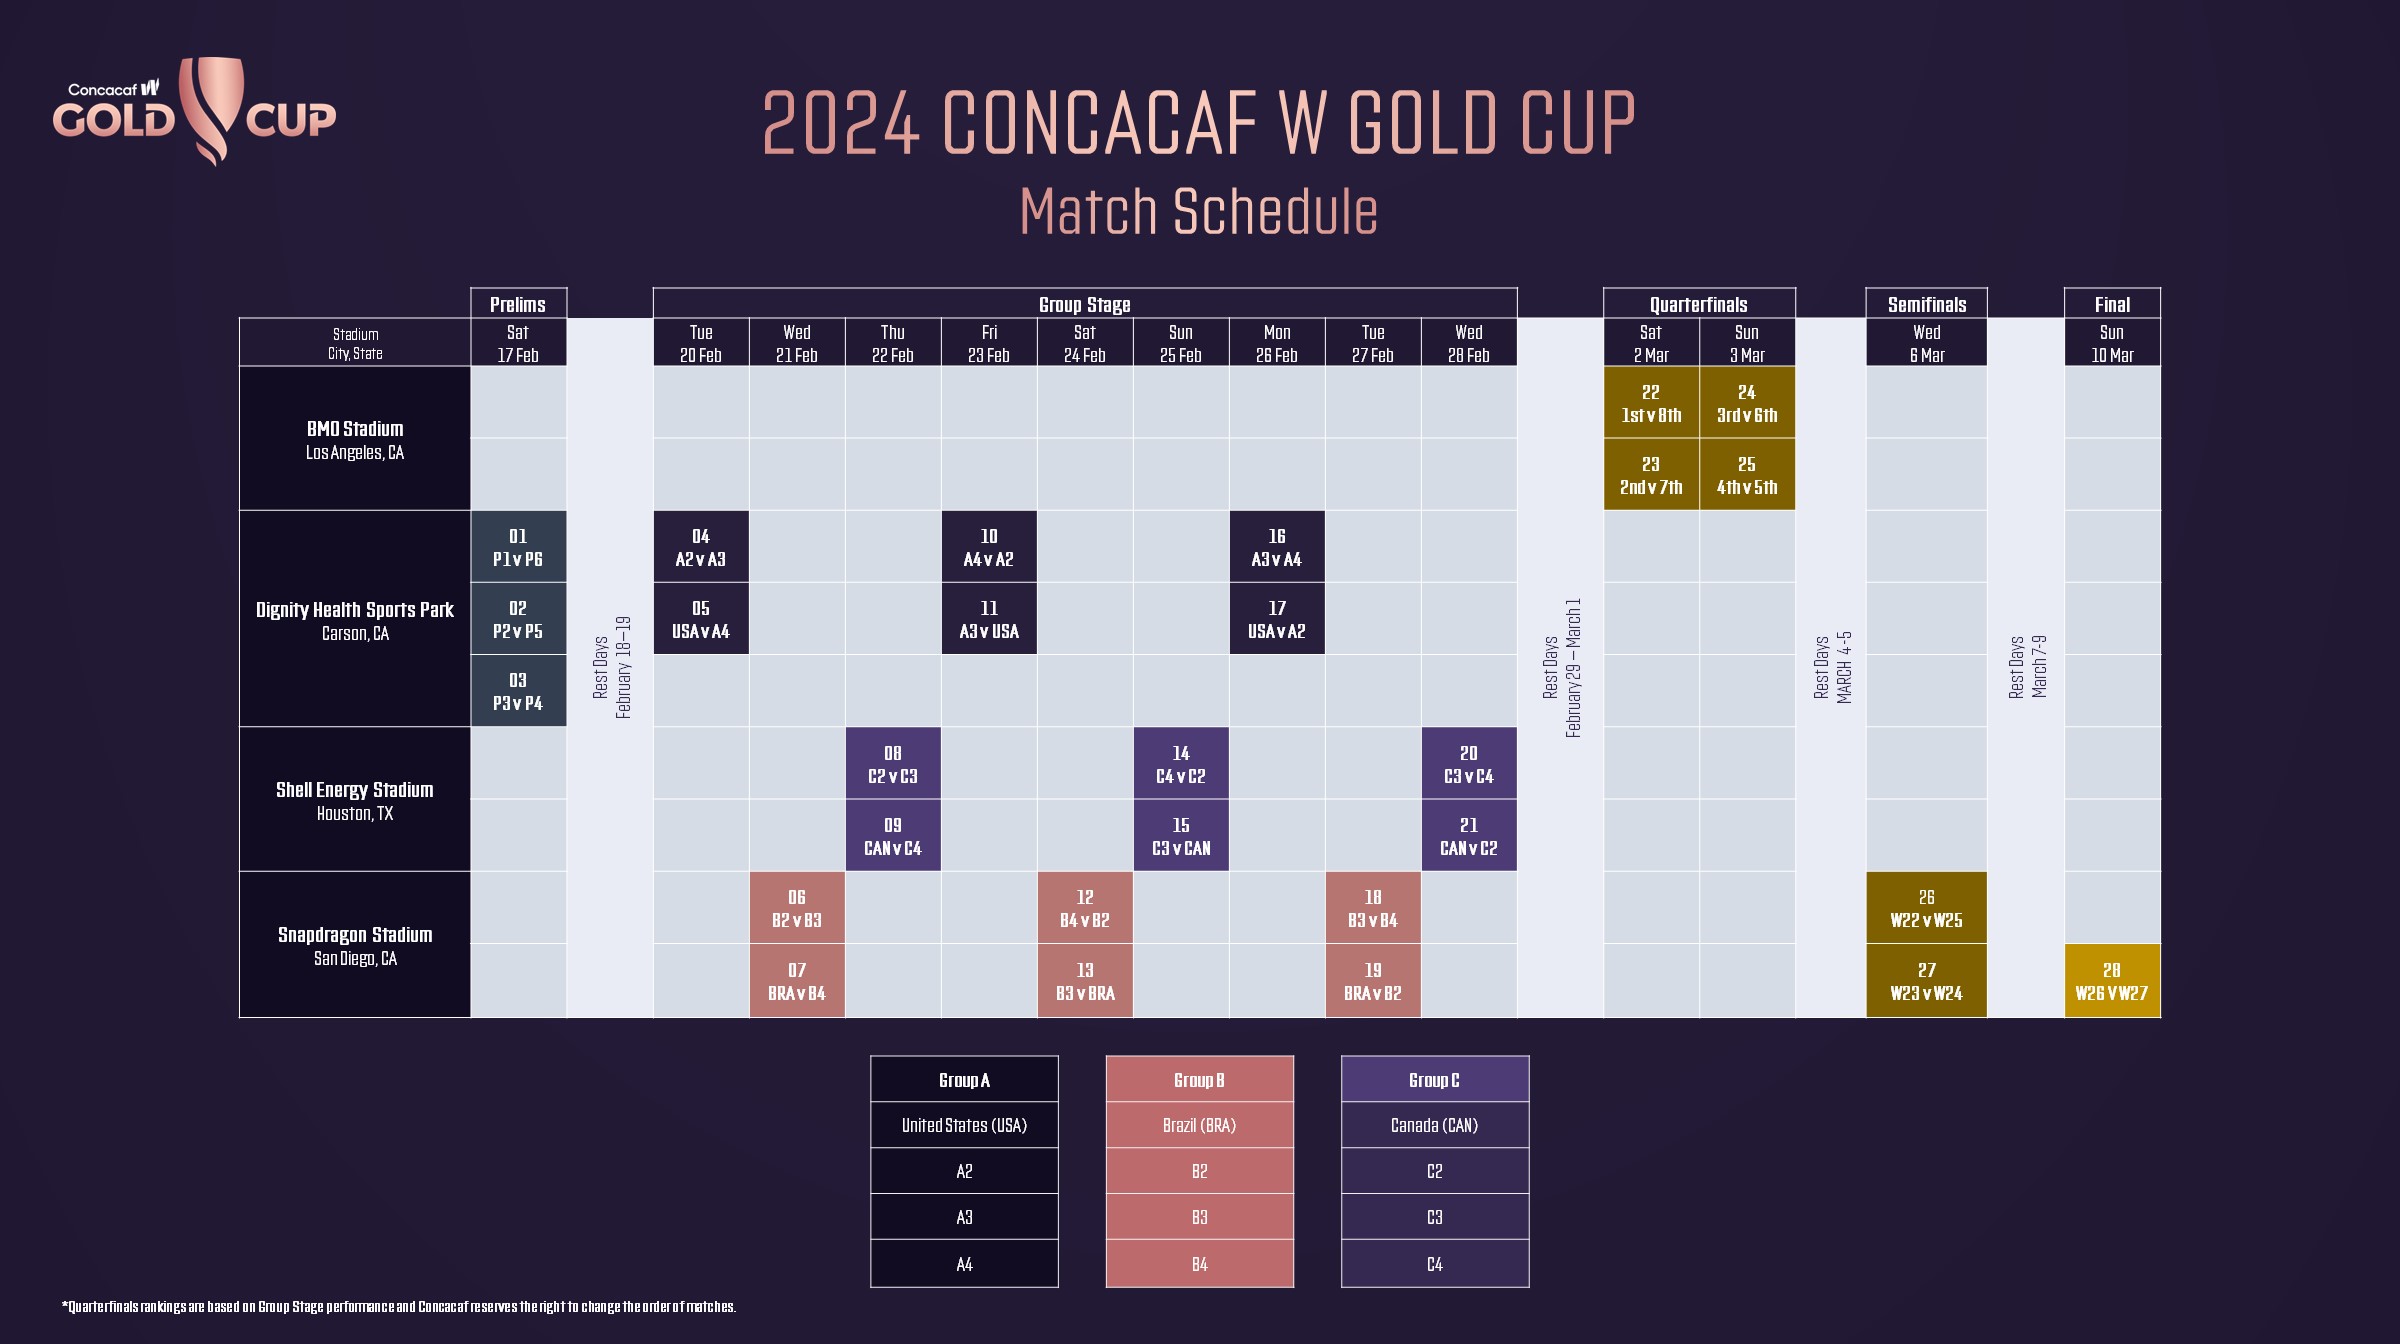 Concacaf anuncia las sedes y el calendario de partidos de la Copa Oro Concacaf W 2024